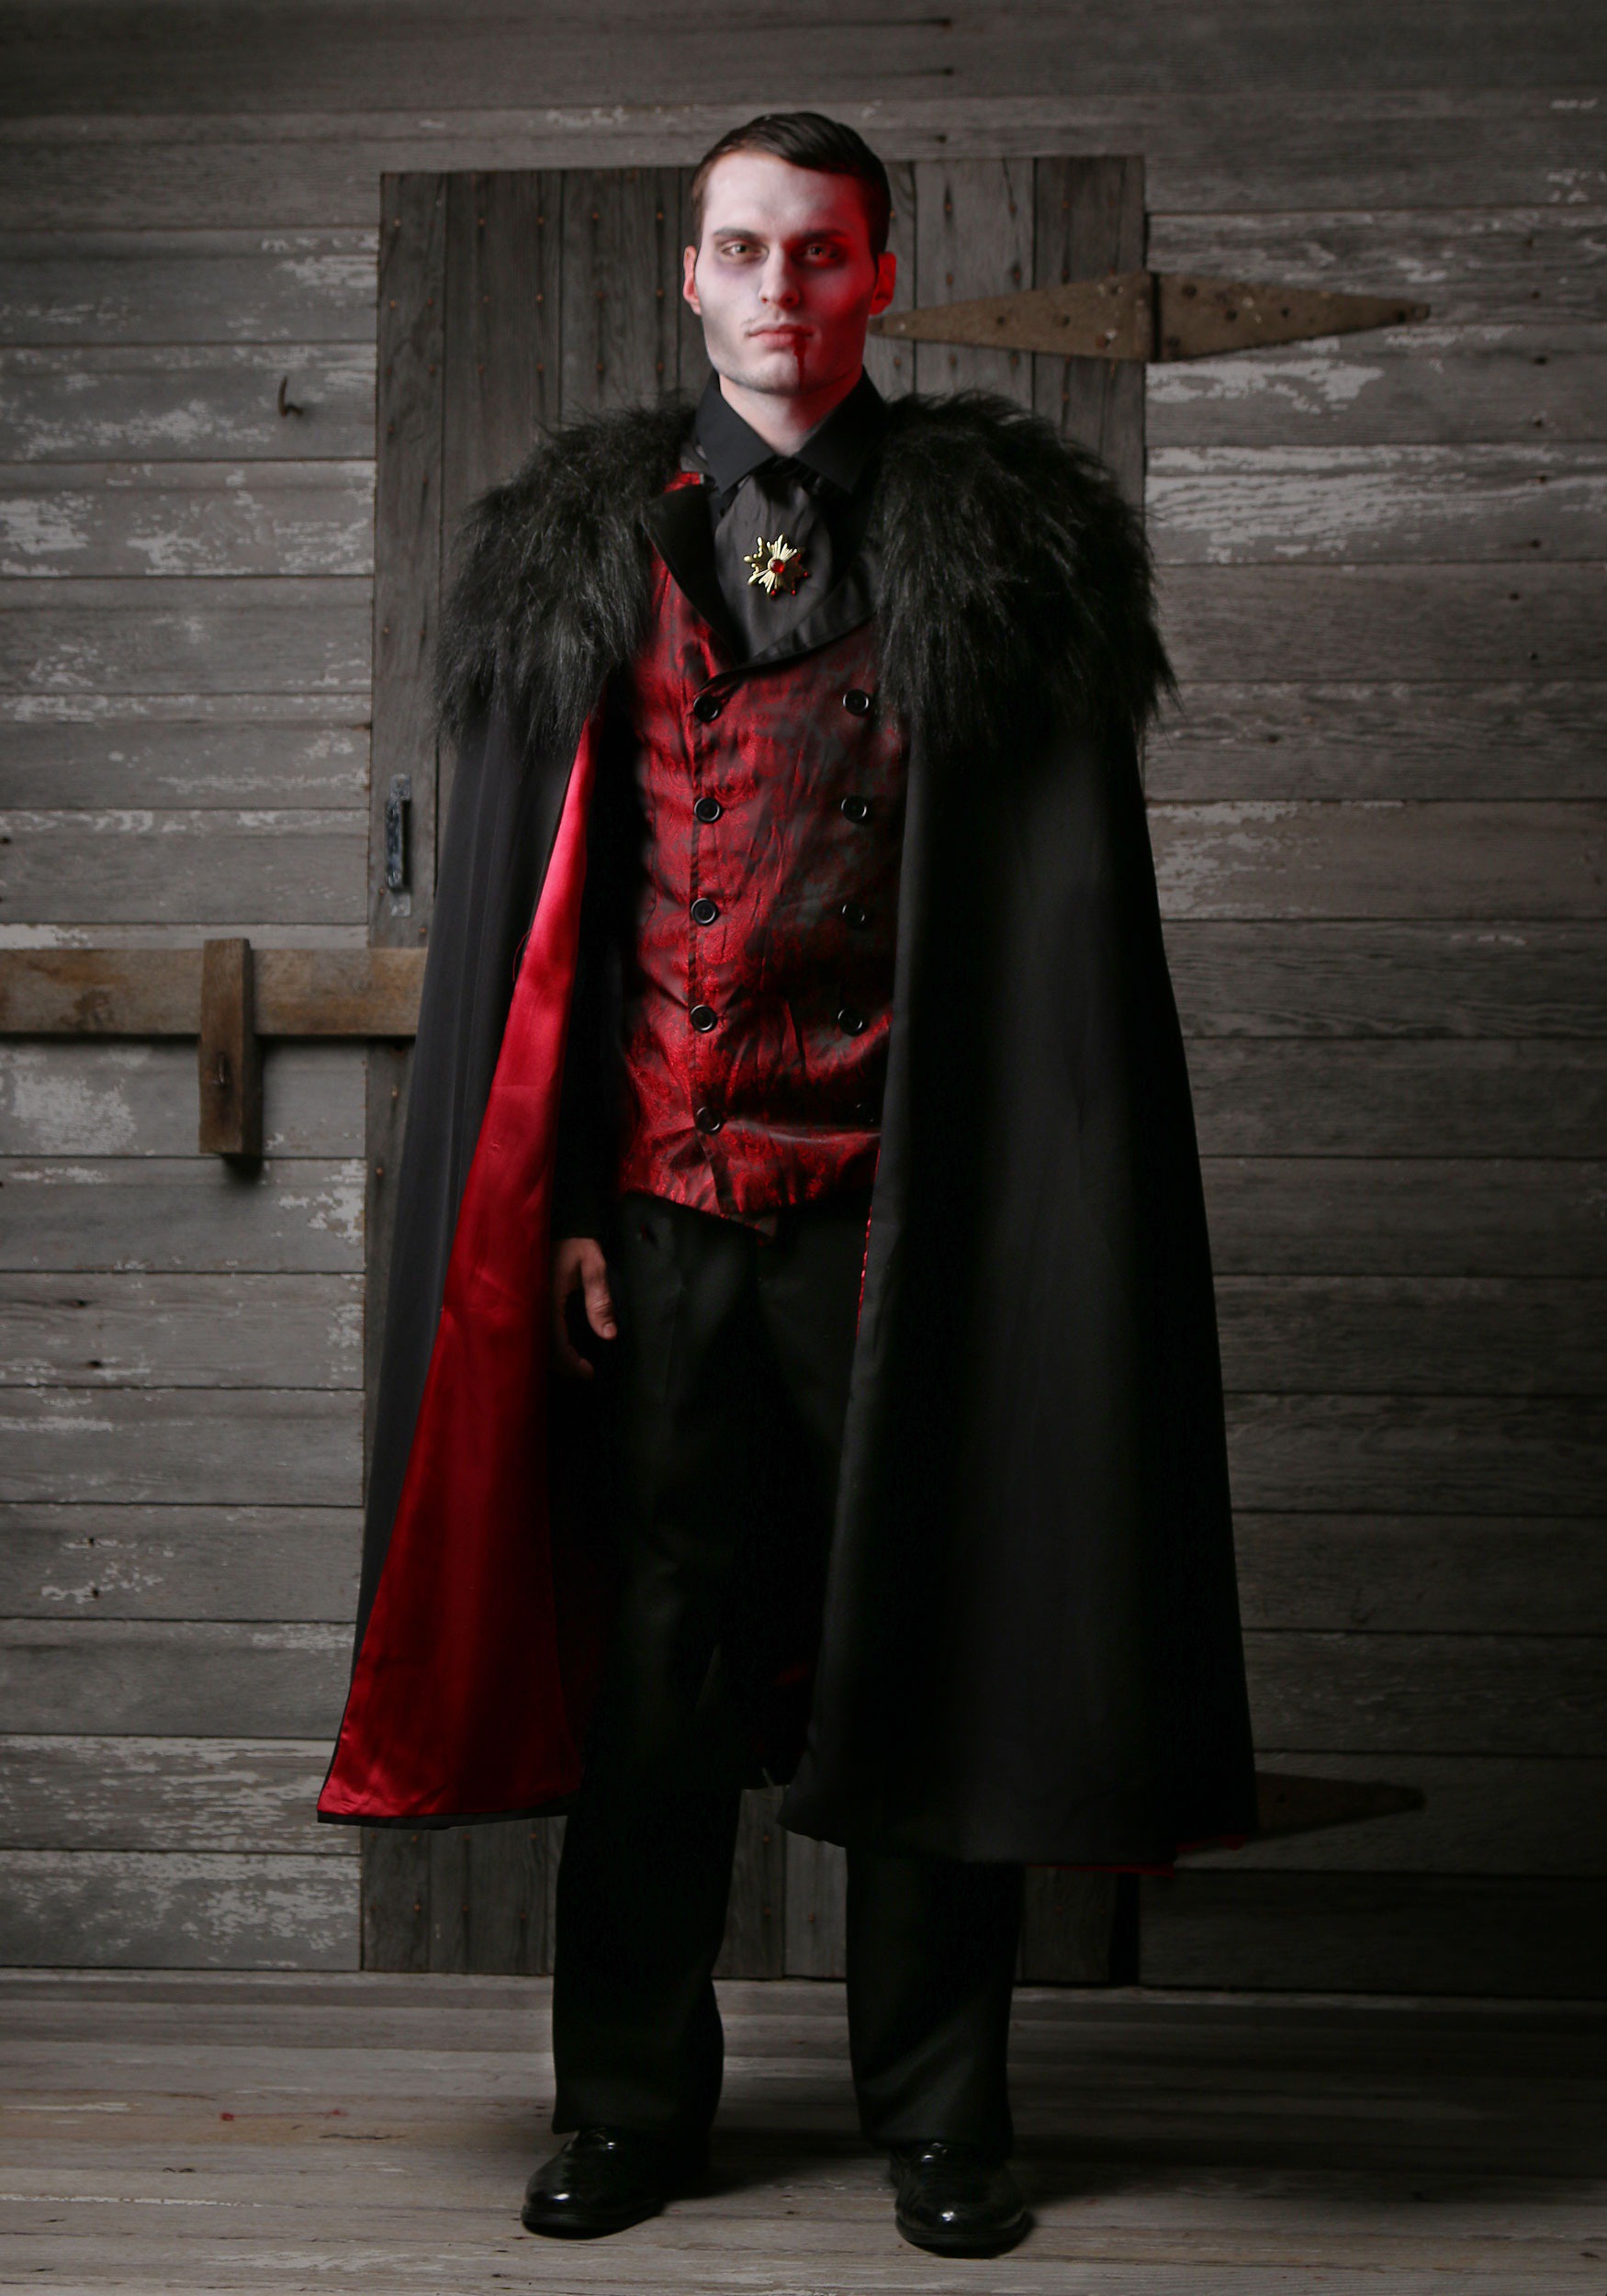 Men's Deluxe Vampire Costume